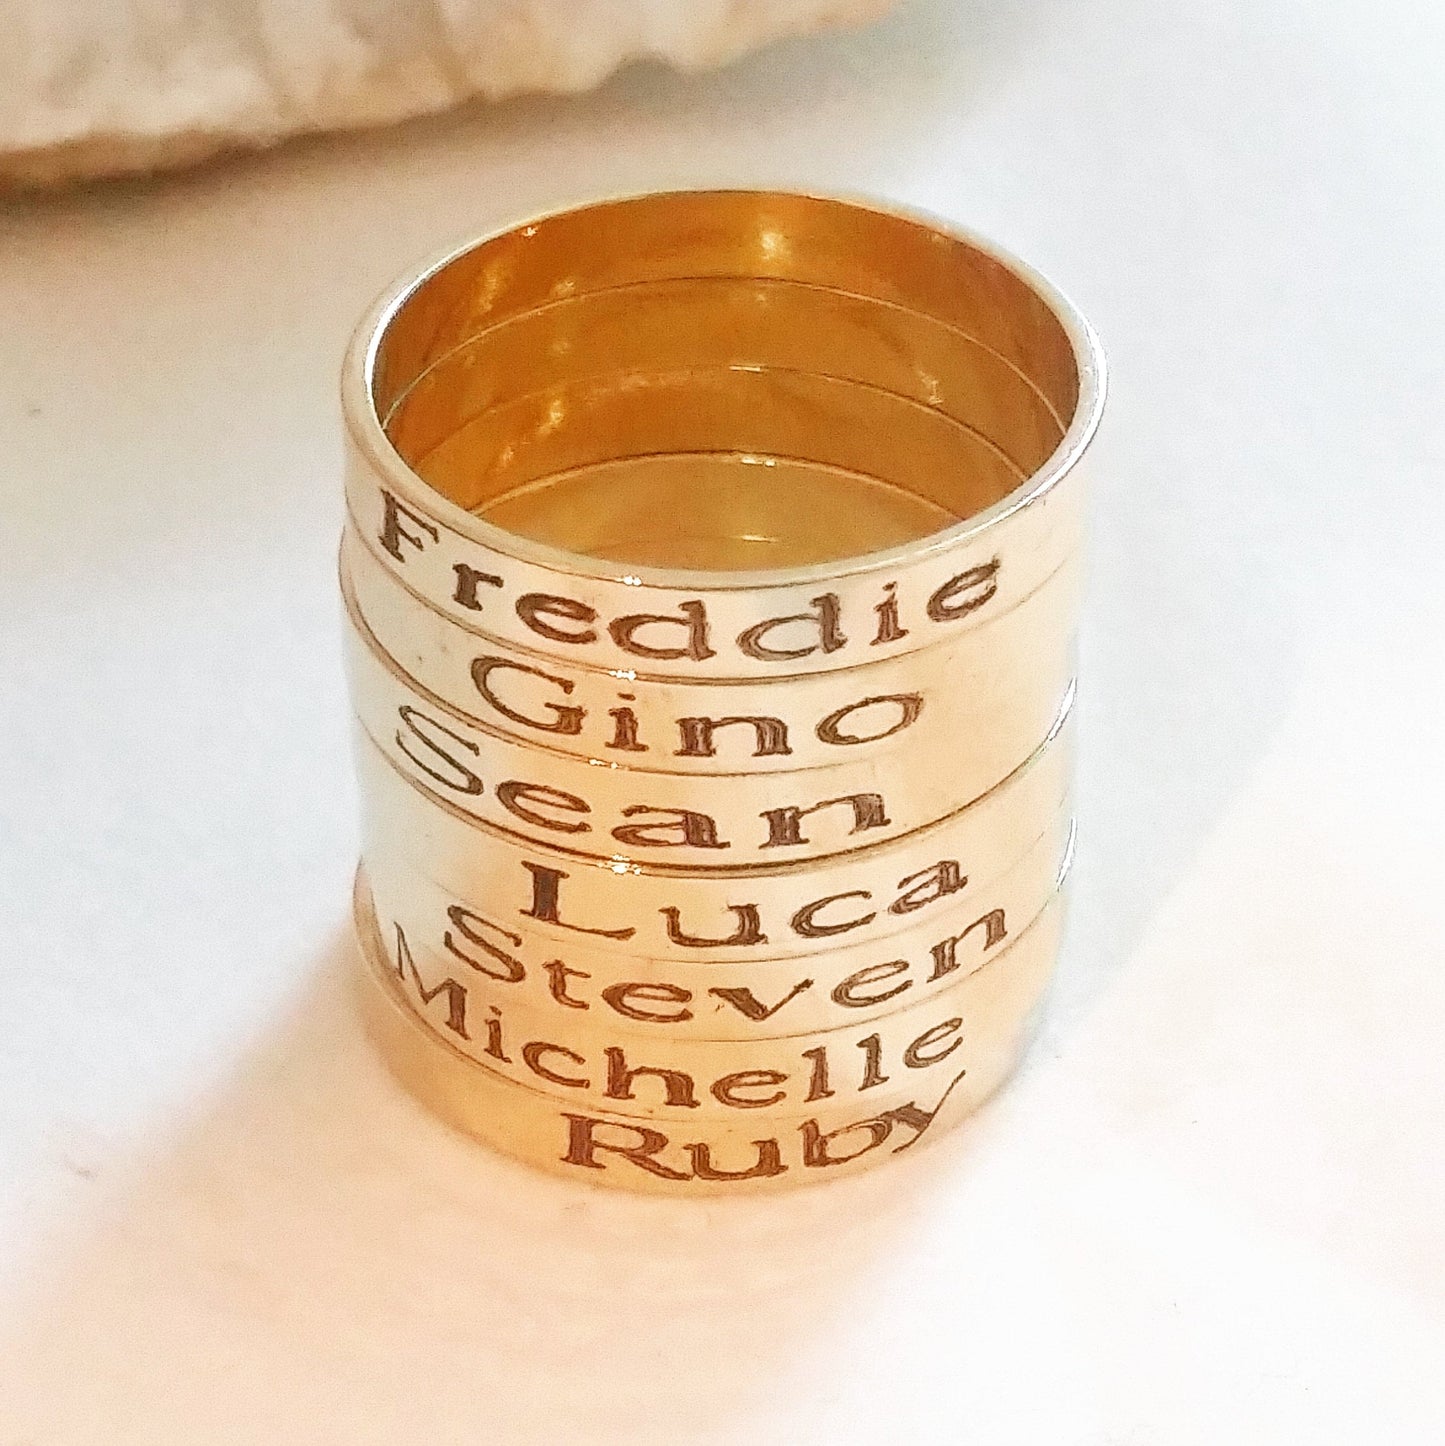 Écriture personnalisée gravée sur un anneau ajustable en argent, or ou or rose